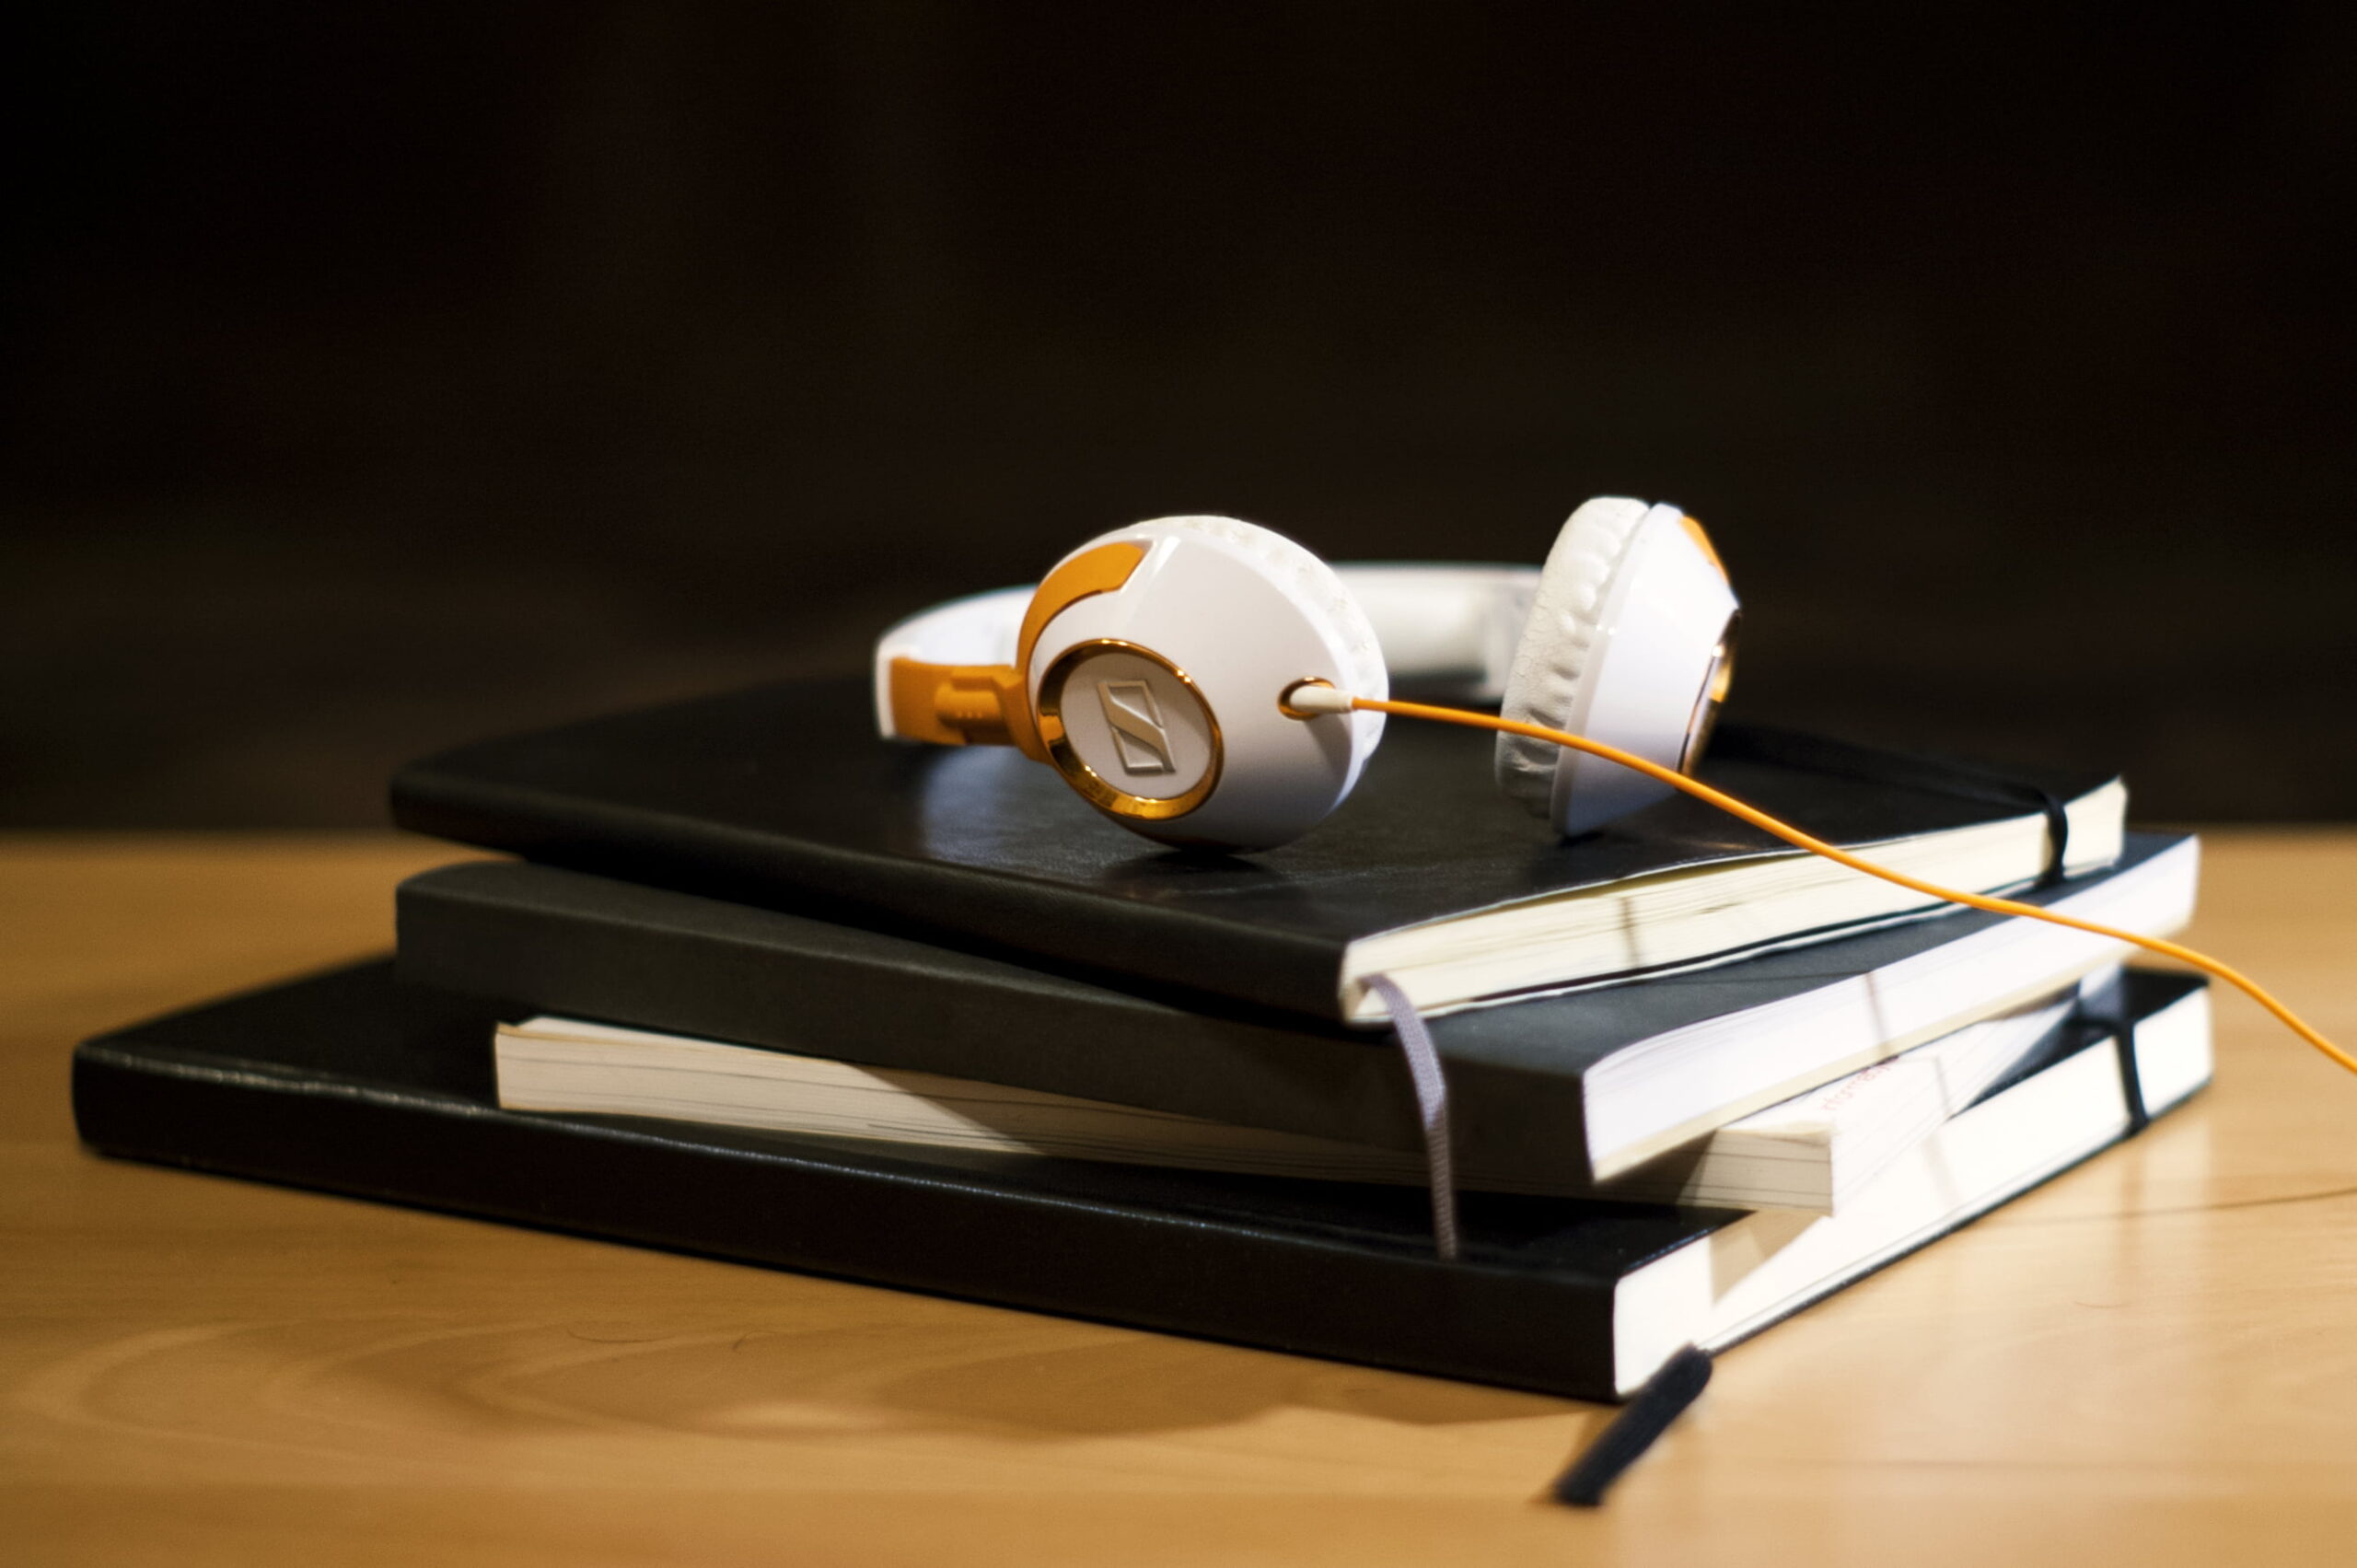 Energirenover din bolig med lydbøger i ørene